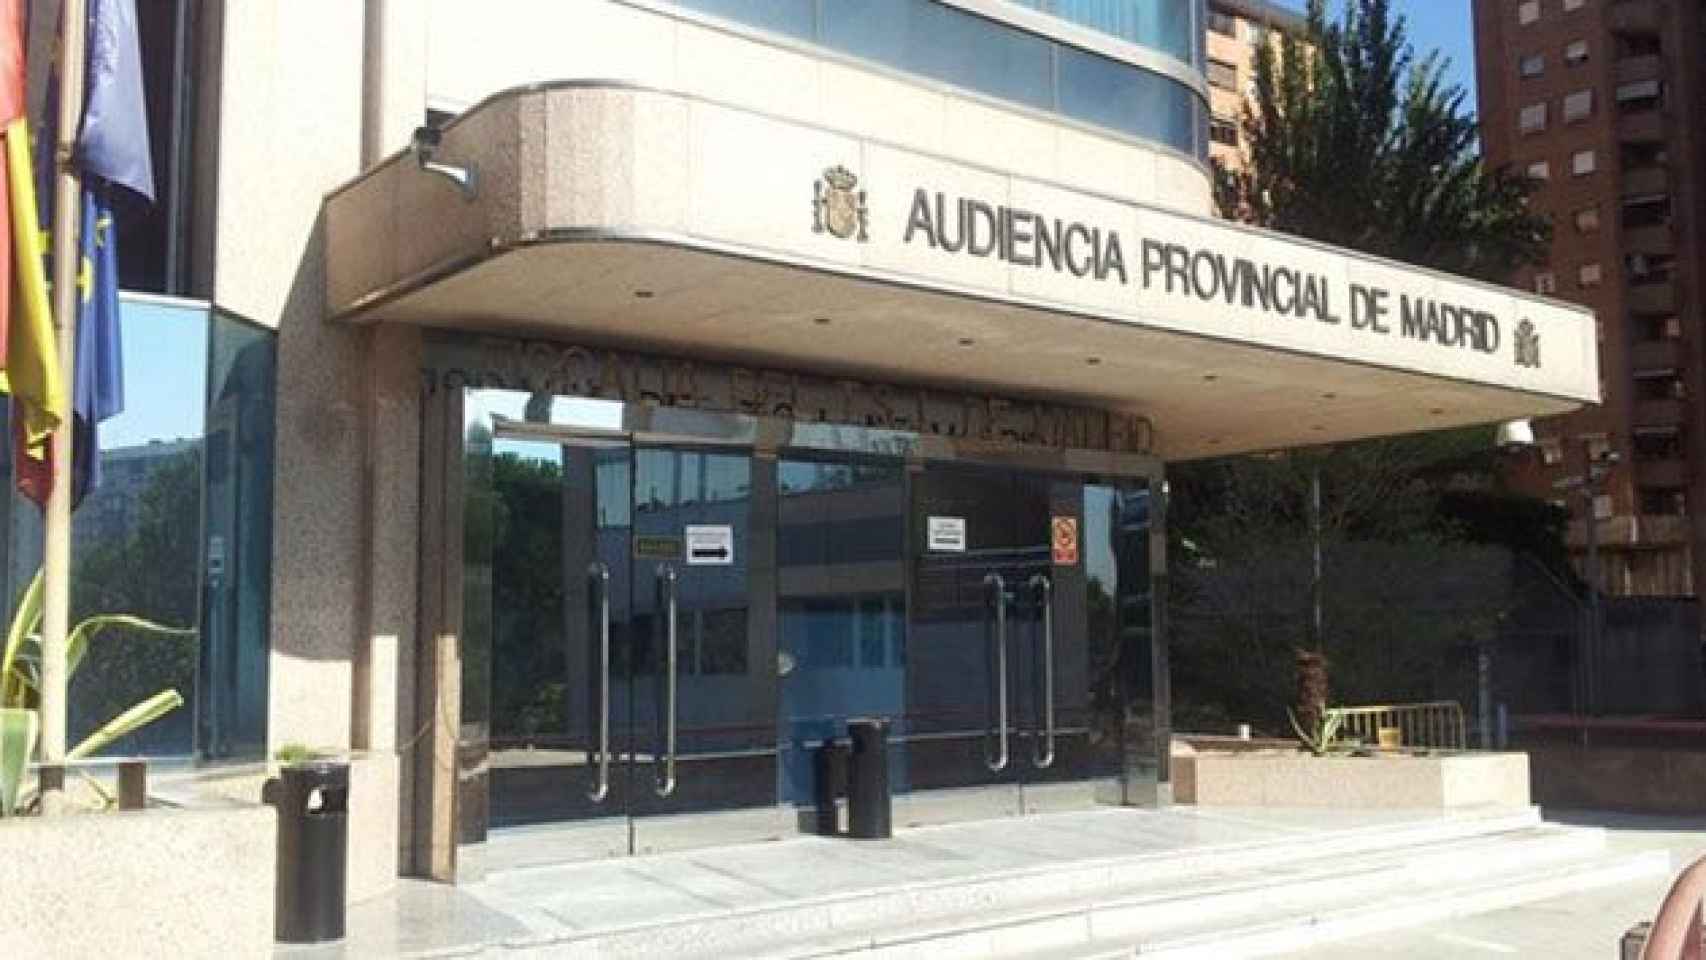 La Audiencia Nacional de Madrid lleva el juicio de esta abuela estafada / EP